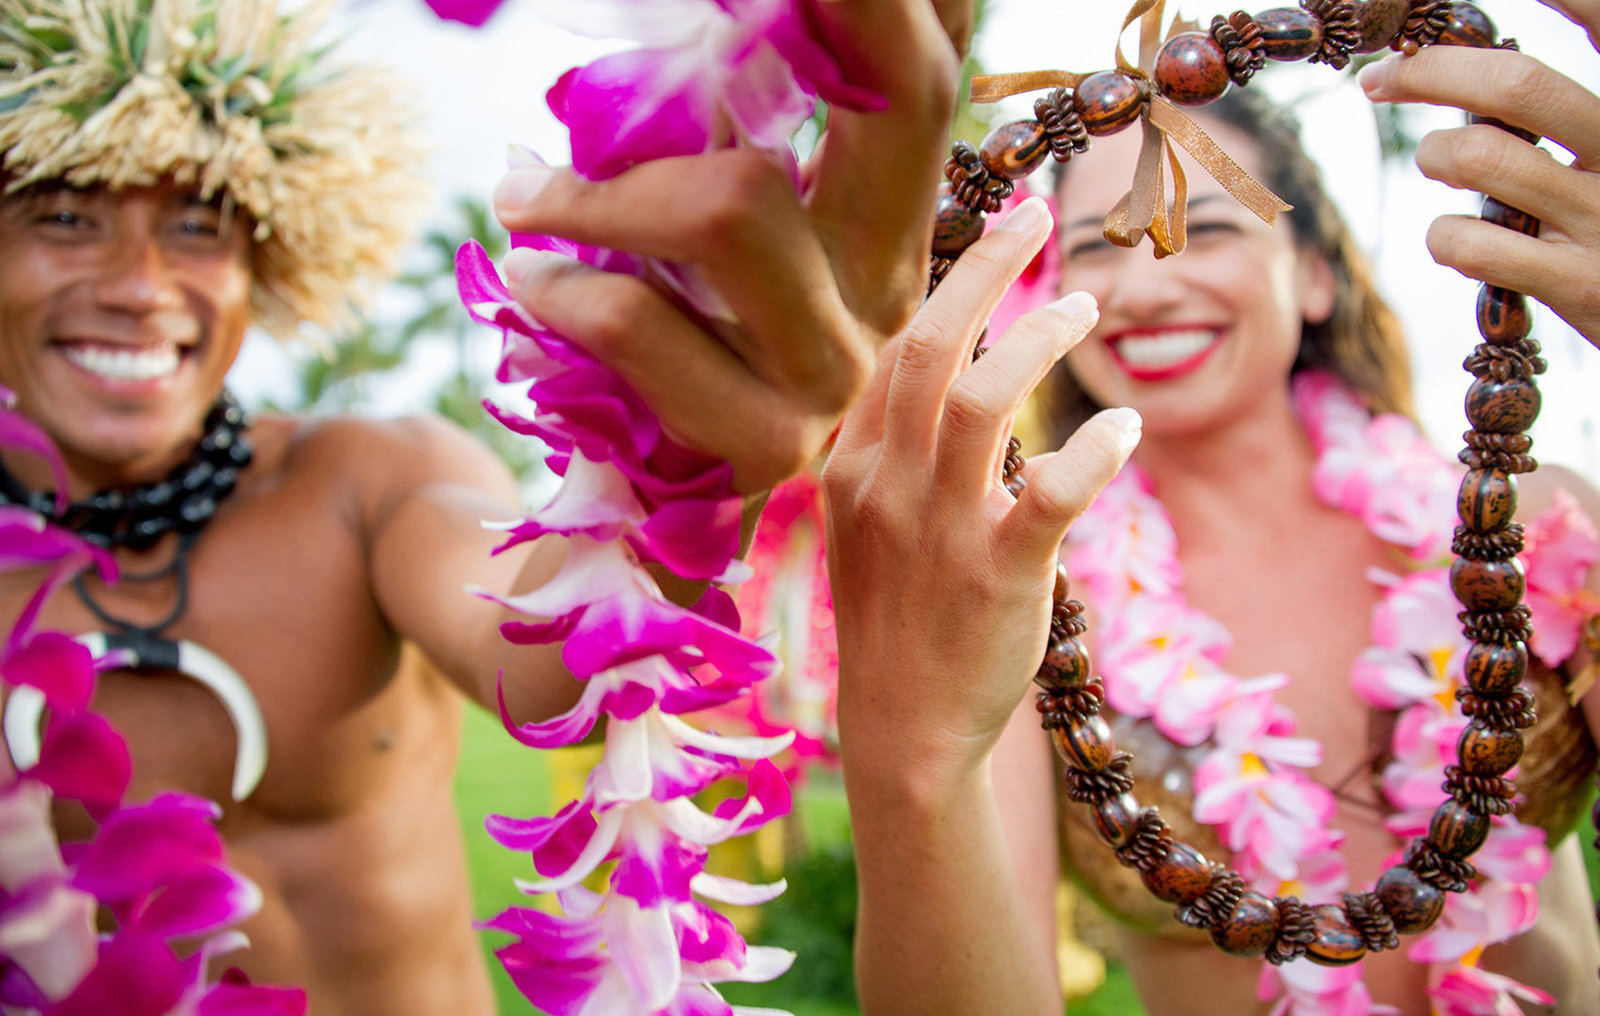 Wailea Maui wedding photographers